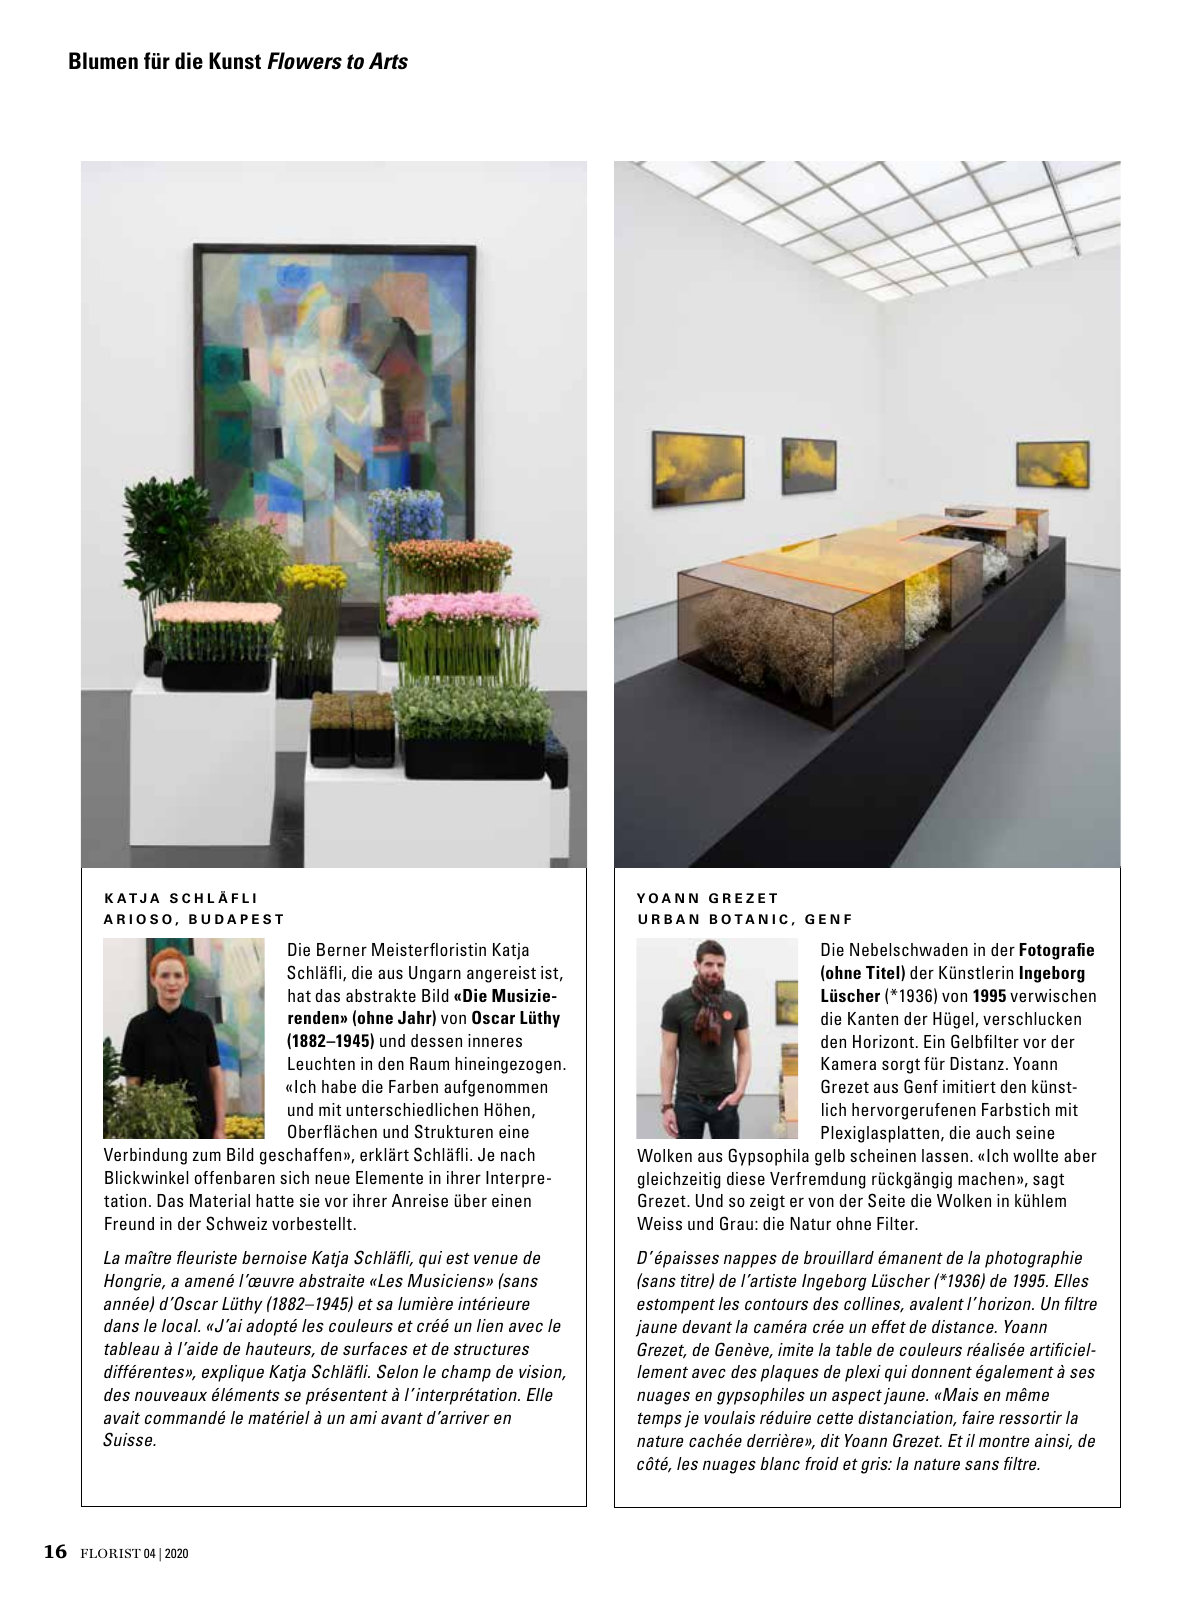 Vorschau Florist - Ausgabe April 2020 Seite 14